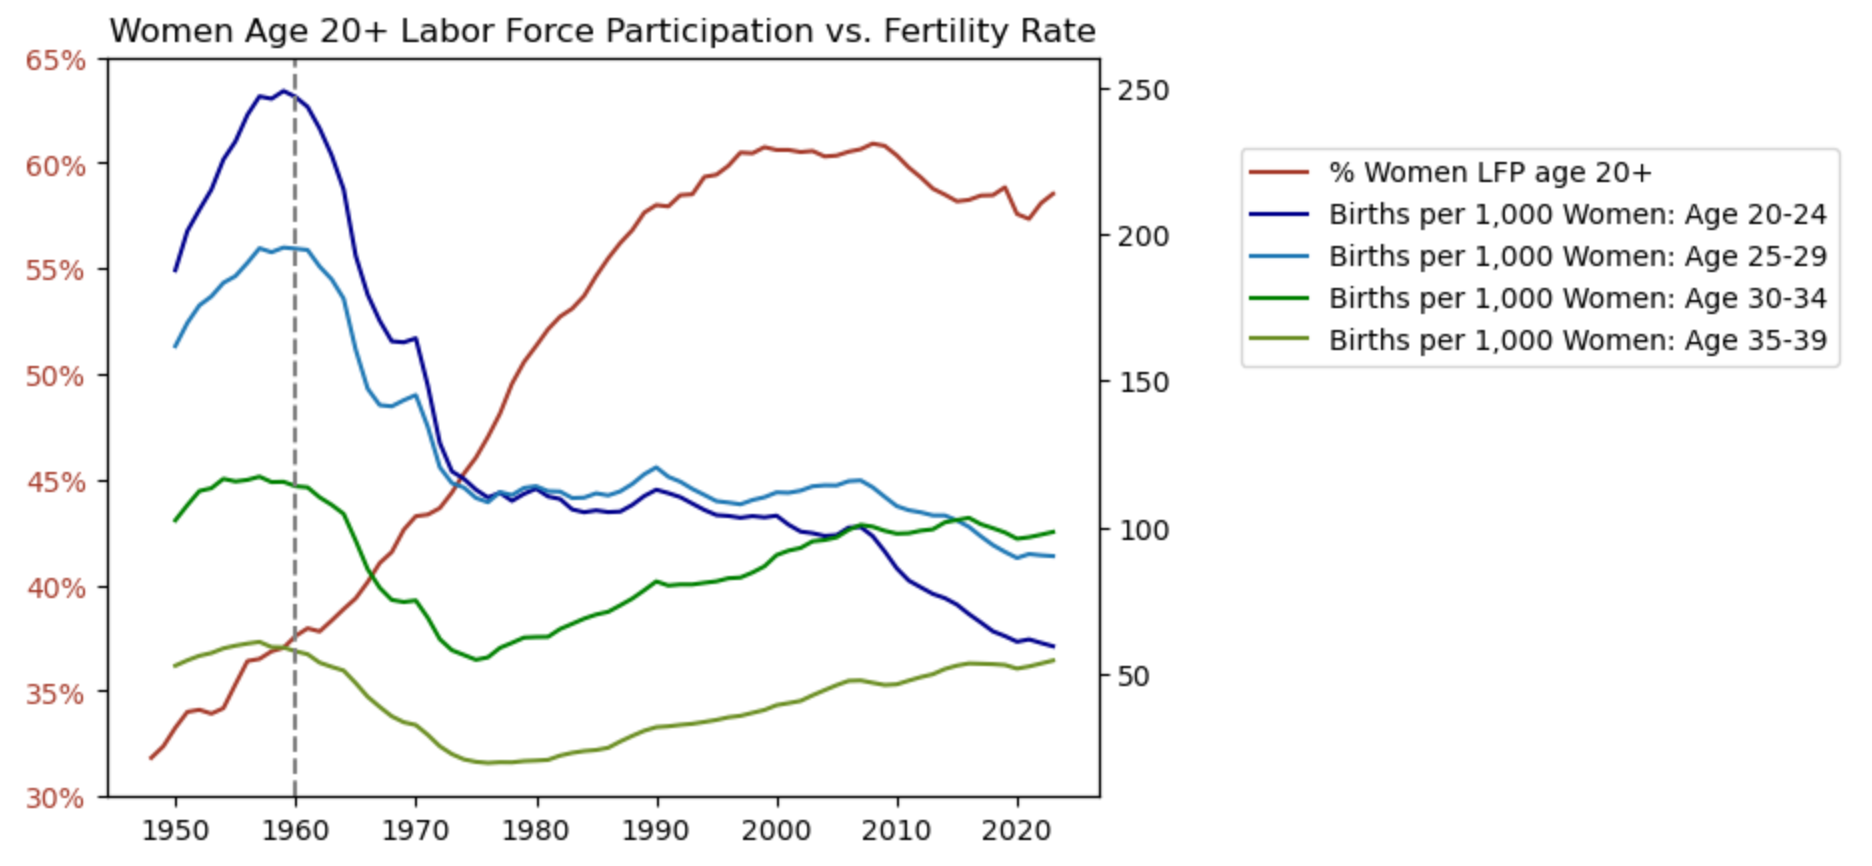 Women's Labor Force Participation vs. Fertility